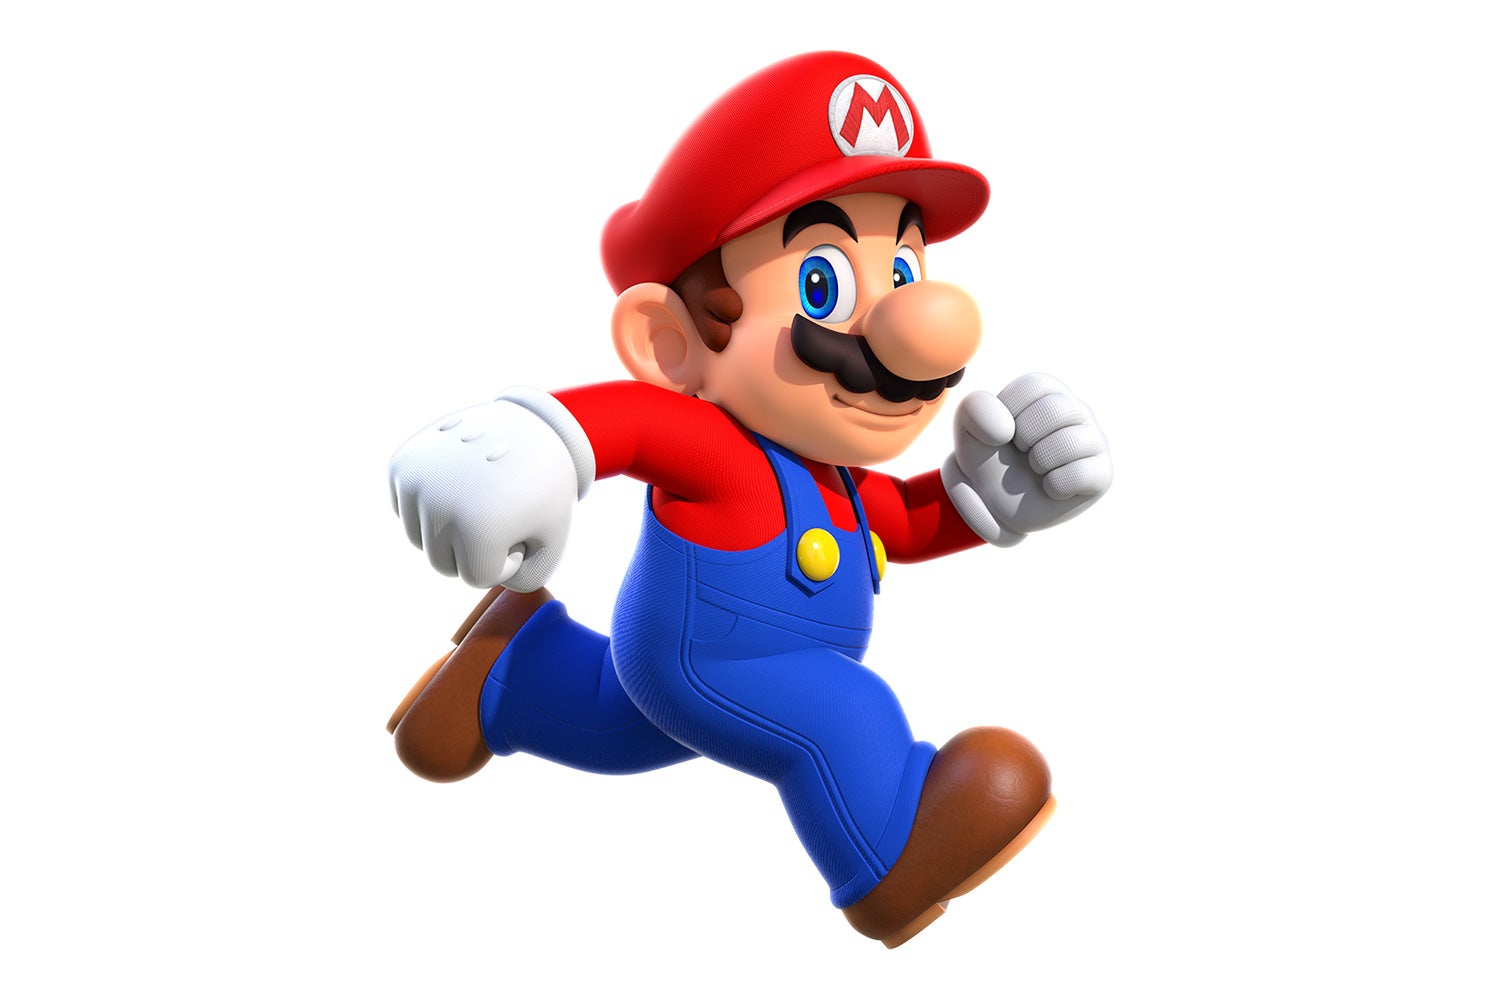 Obrazki dla Super Mario Run pobrano 78 mln razy, ale zapłaciło tylko 5% osób